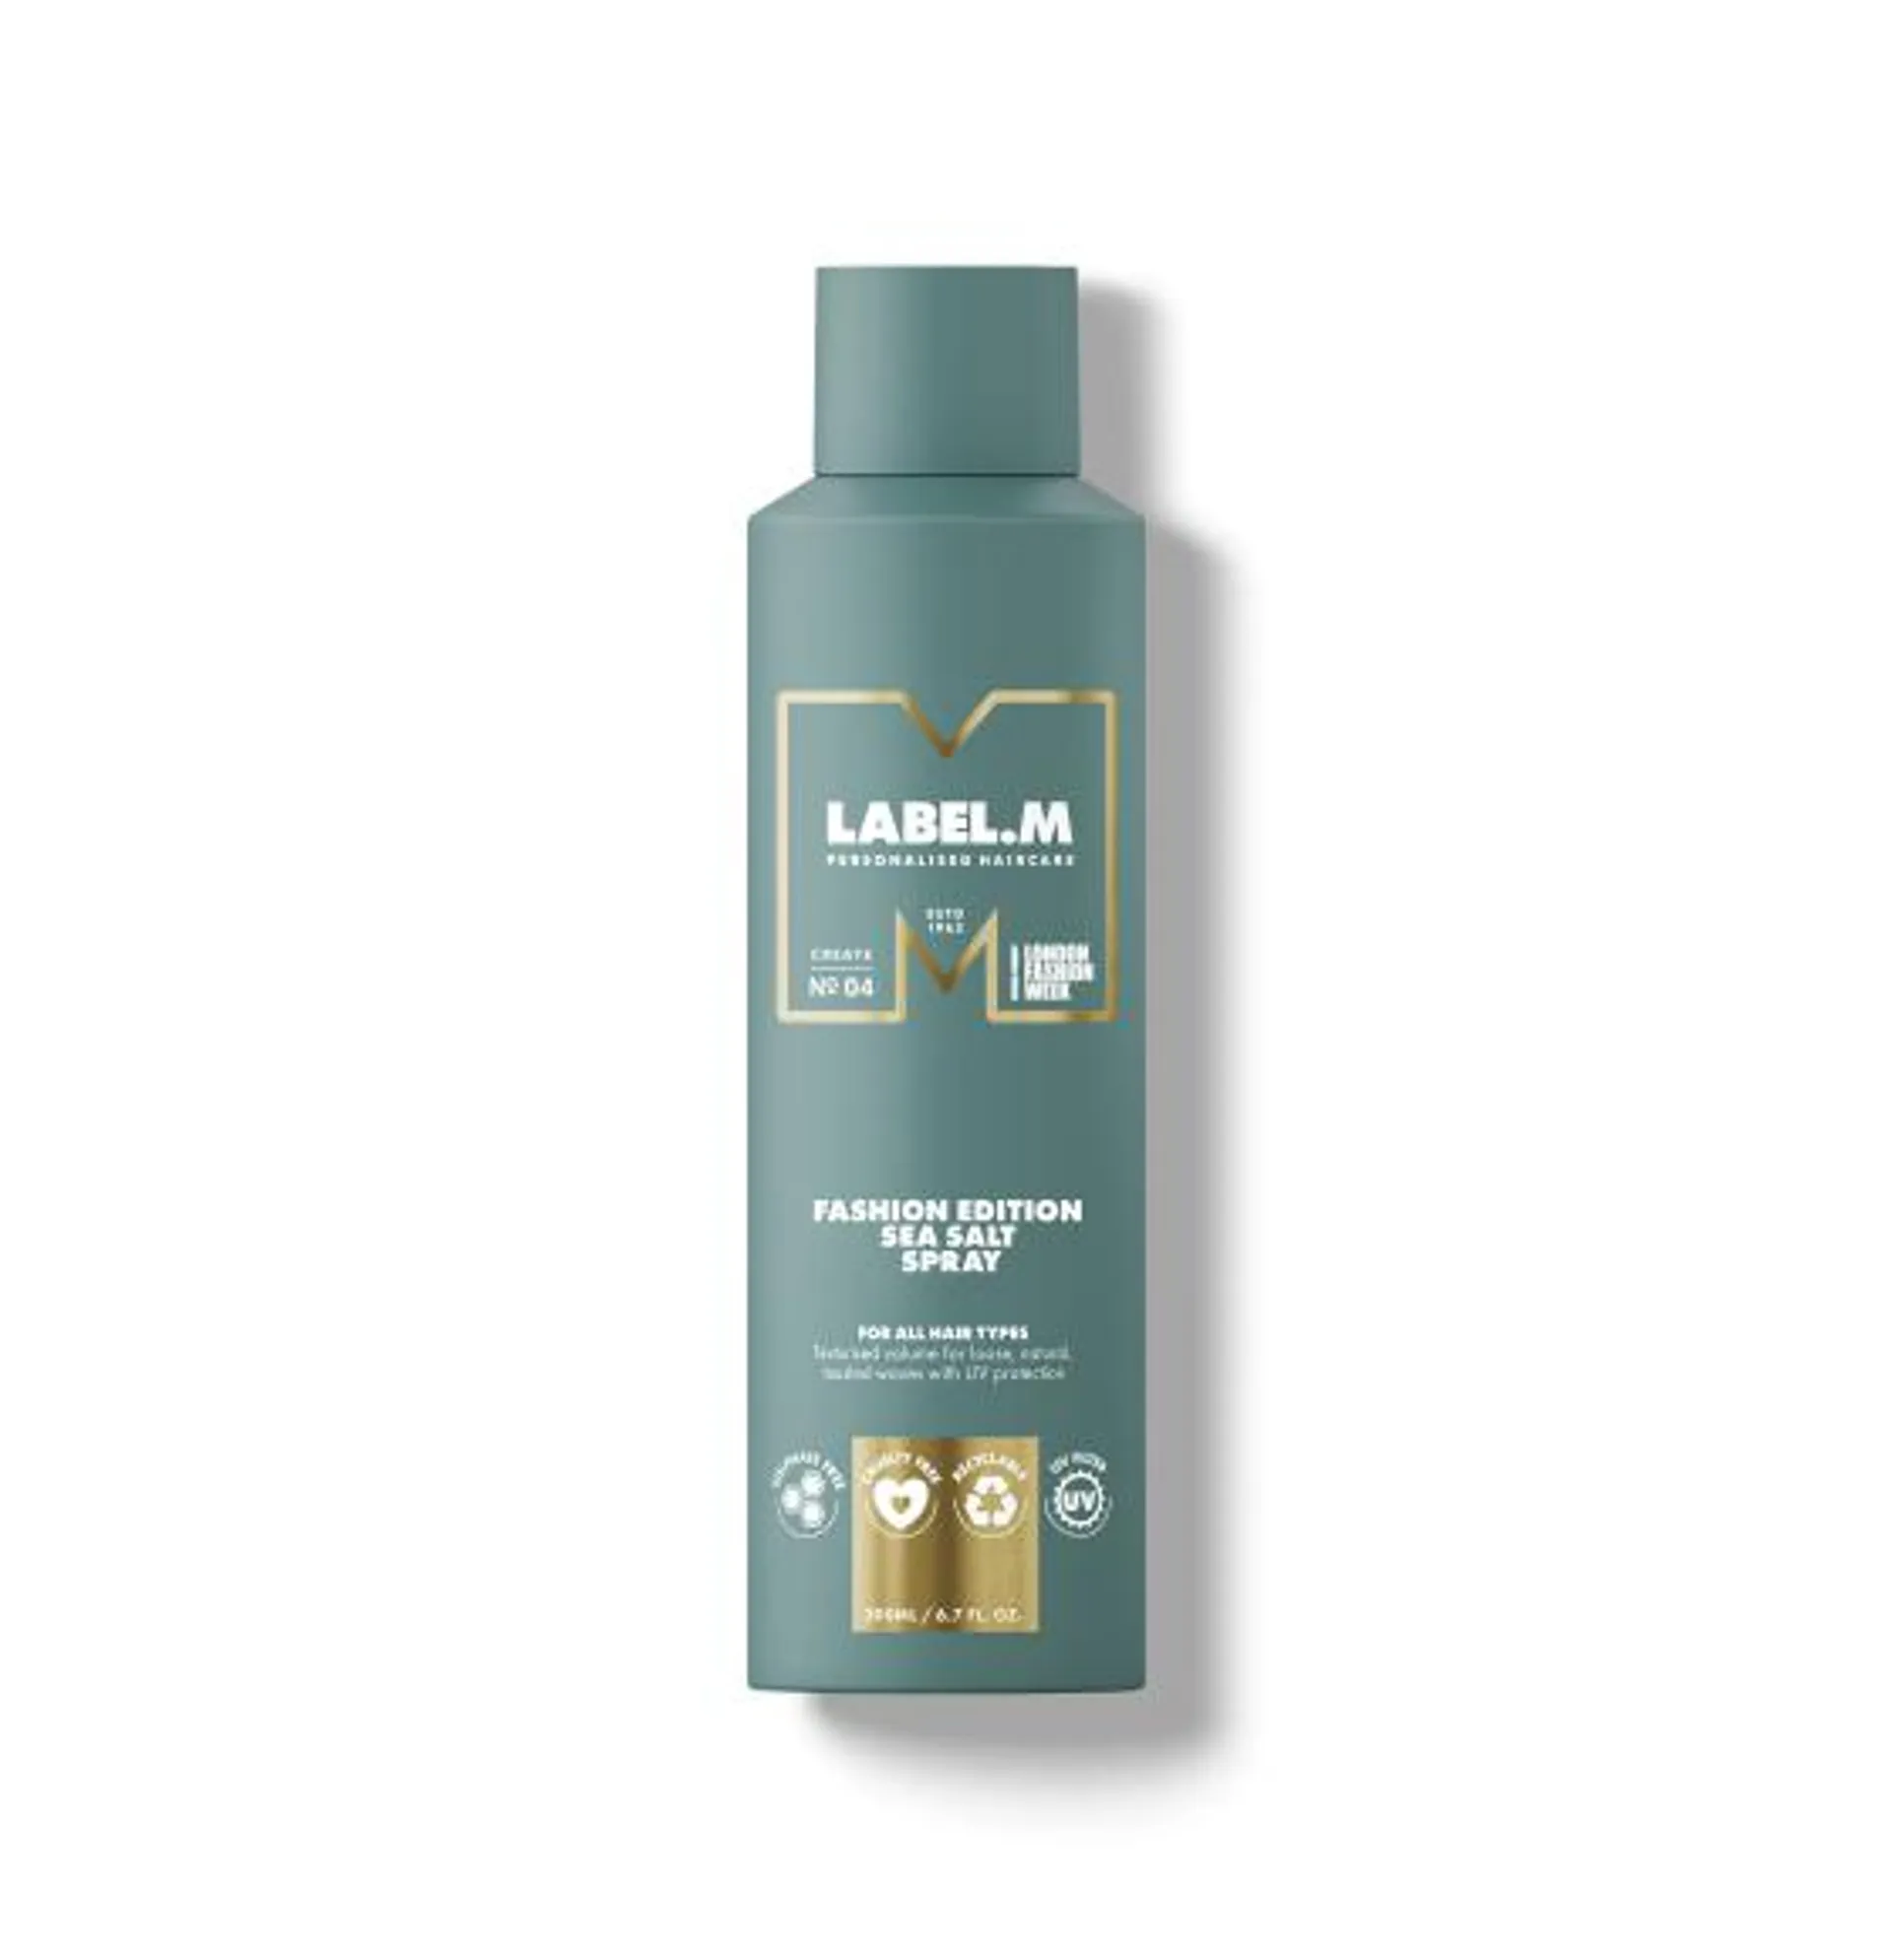 LABEL.M Fashion Edition Sea Salt Spray